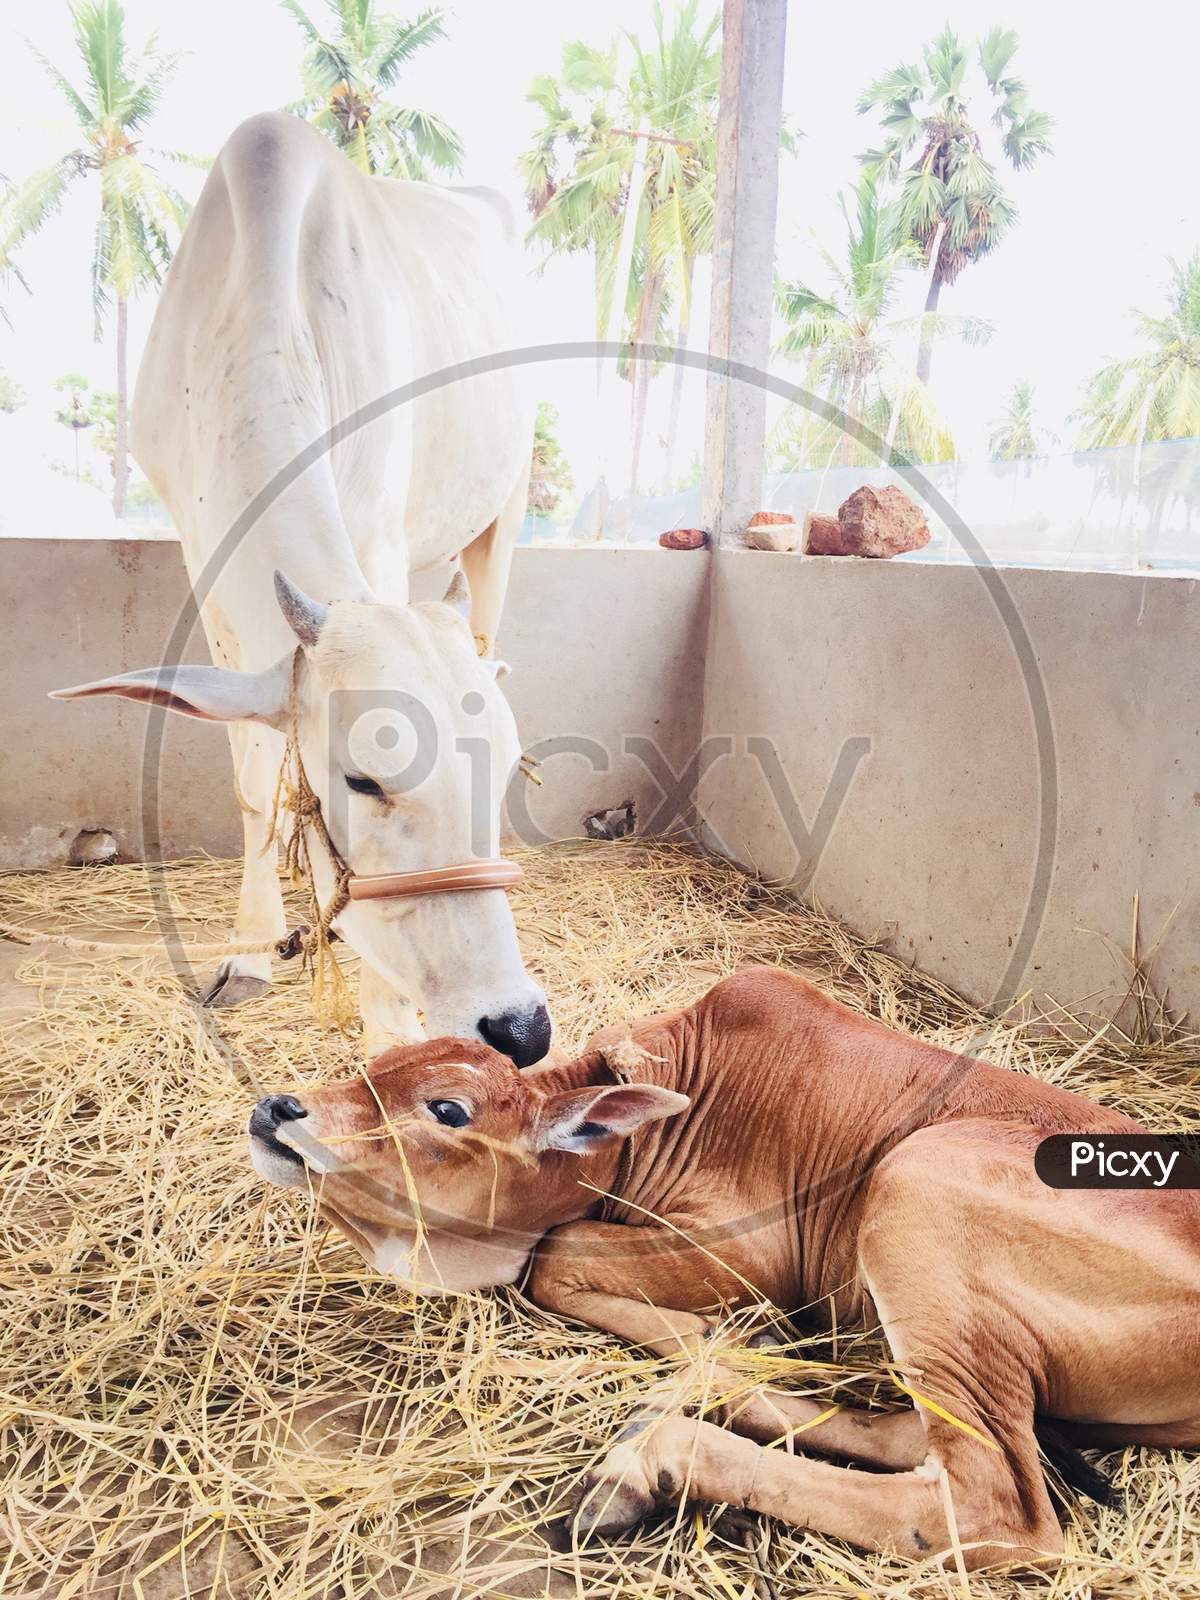 A cow kissing its newborn calf